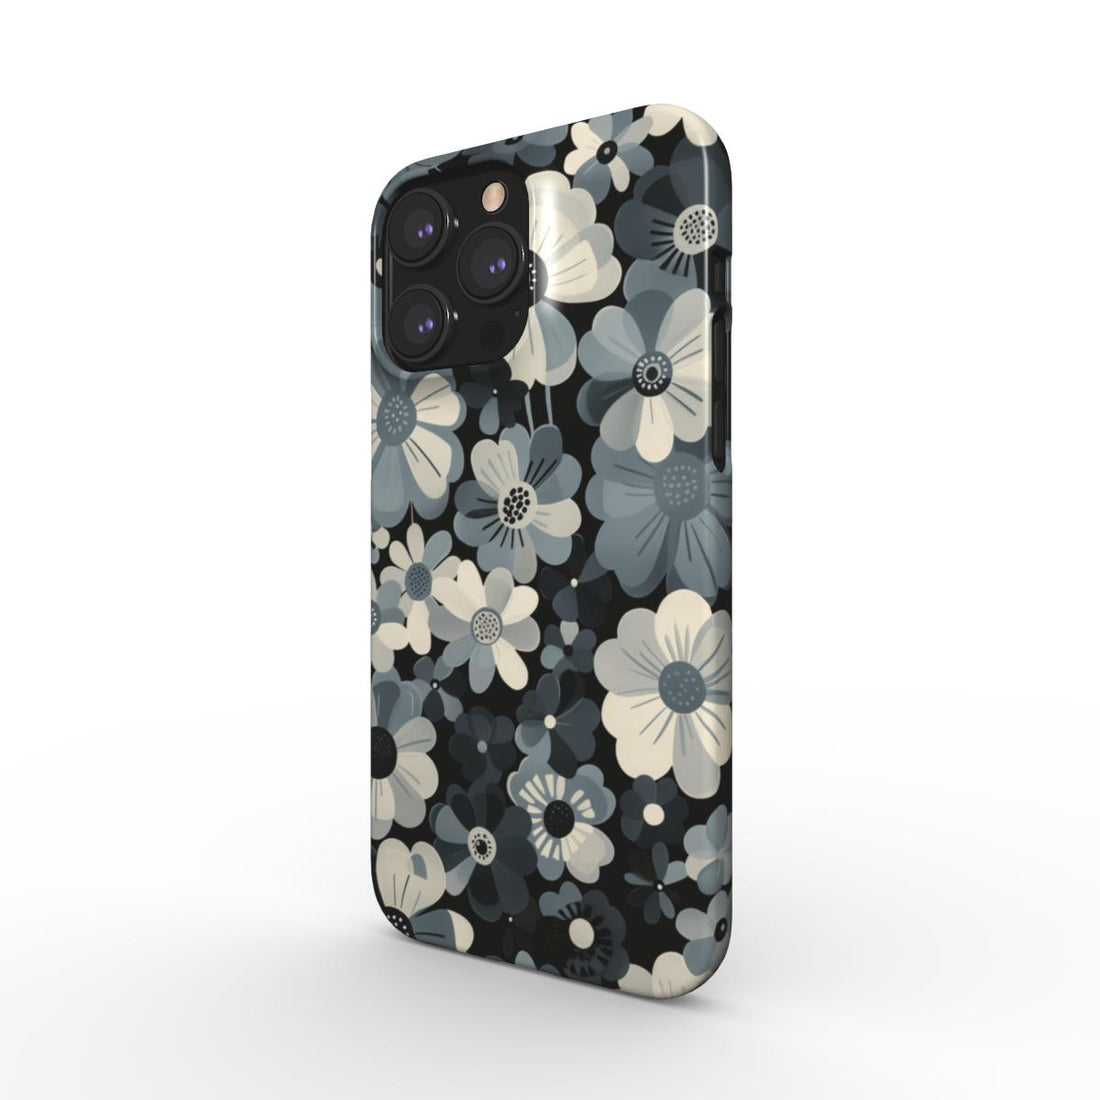 Monochrome Petals Snap Phone Case | Chic Floral Elegance